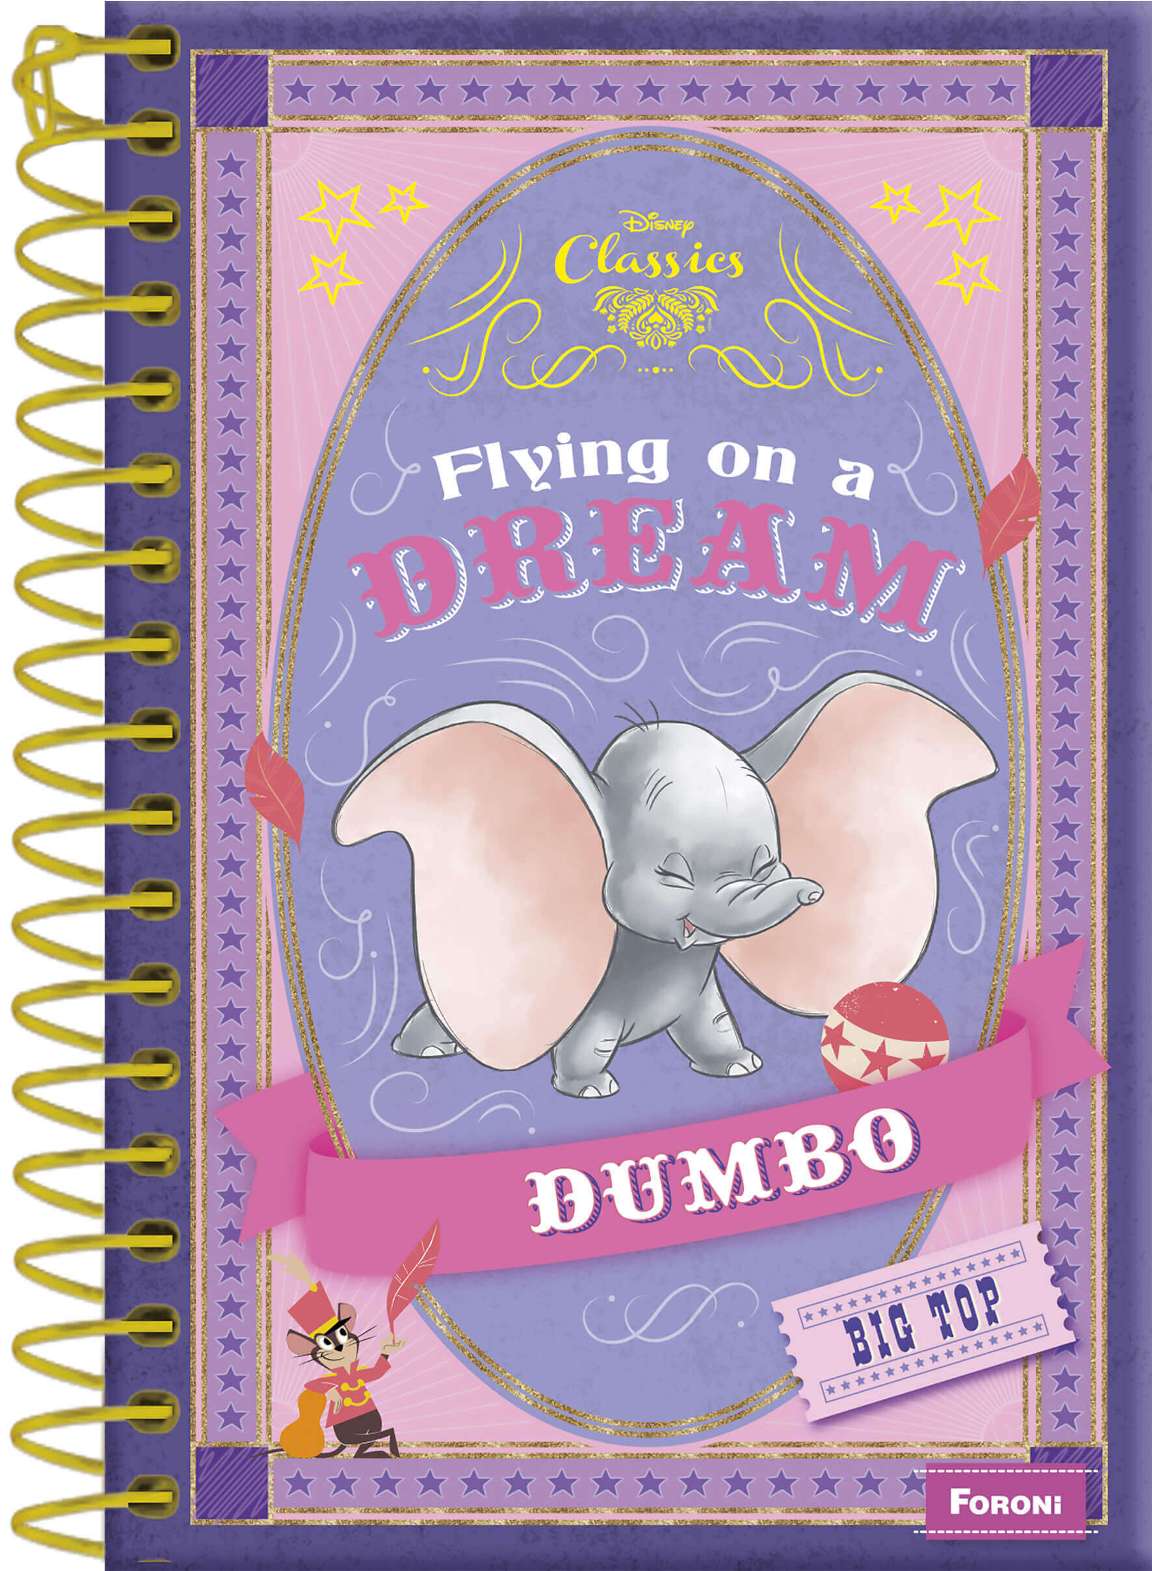 O encantador elefante Dumbo, que retorna aos cinemas nesta semana, é destaque na linha Disney Classics 2019 da Foroni!